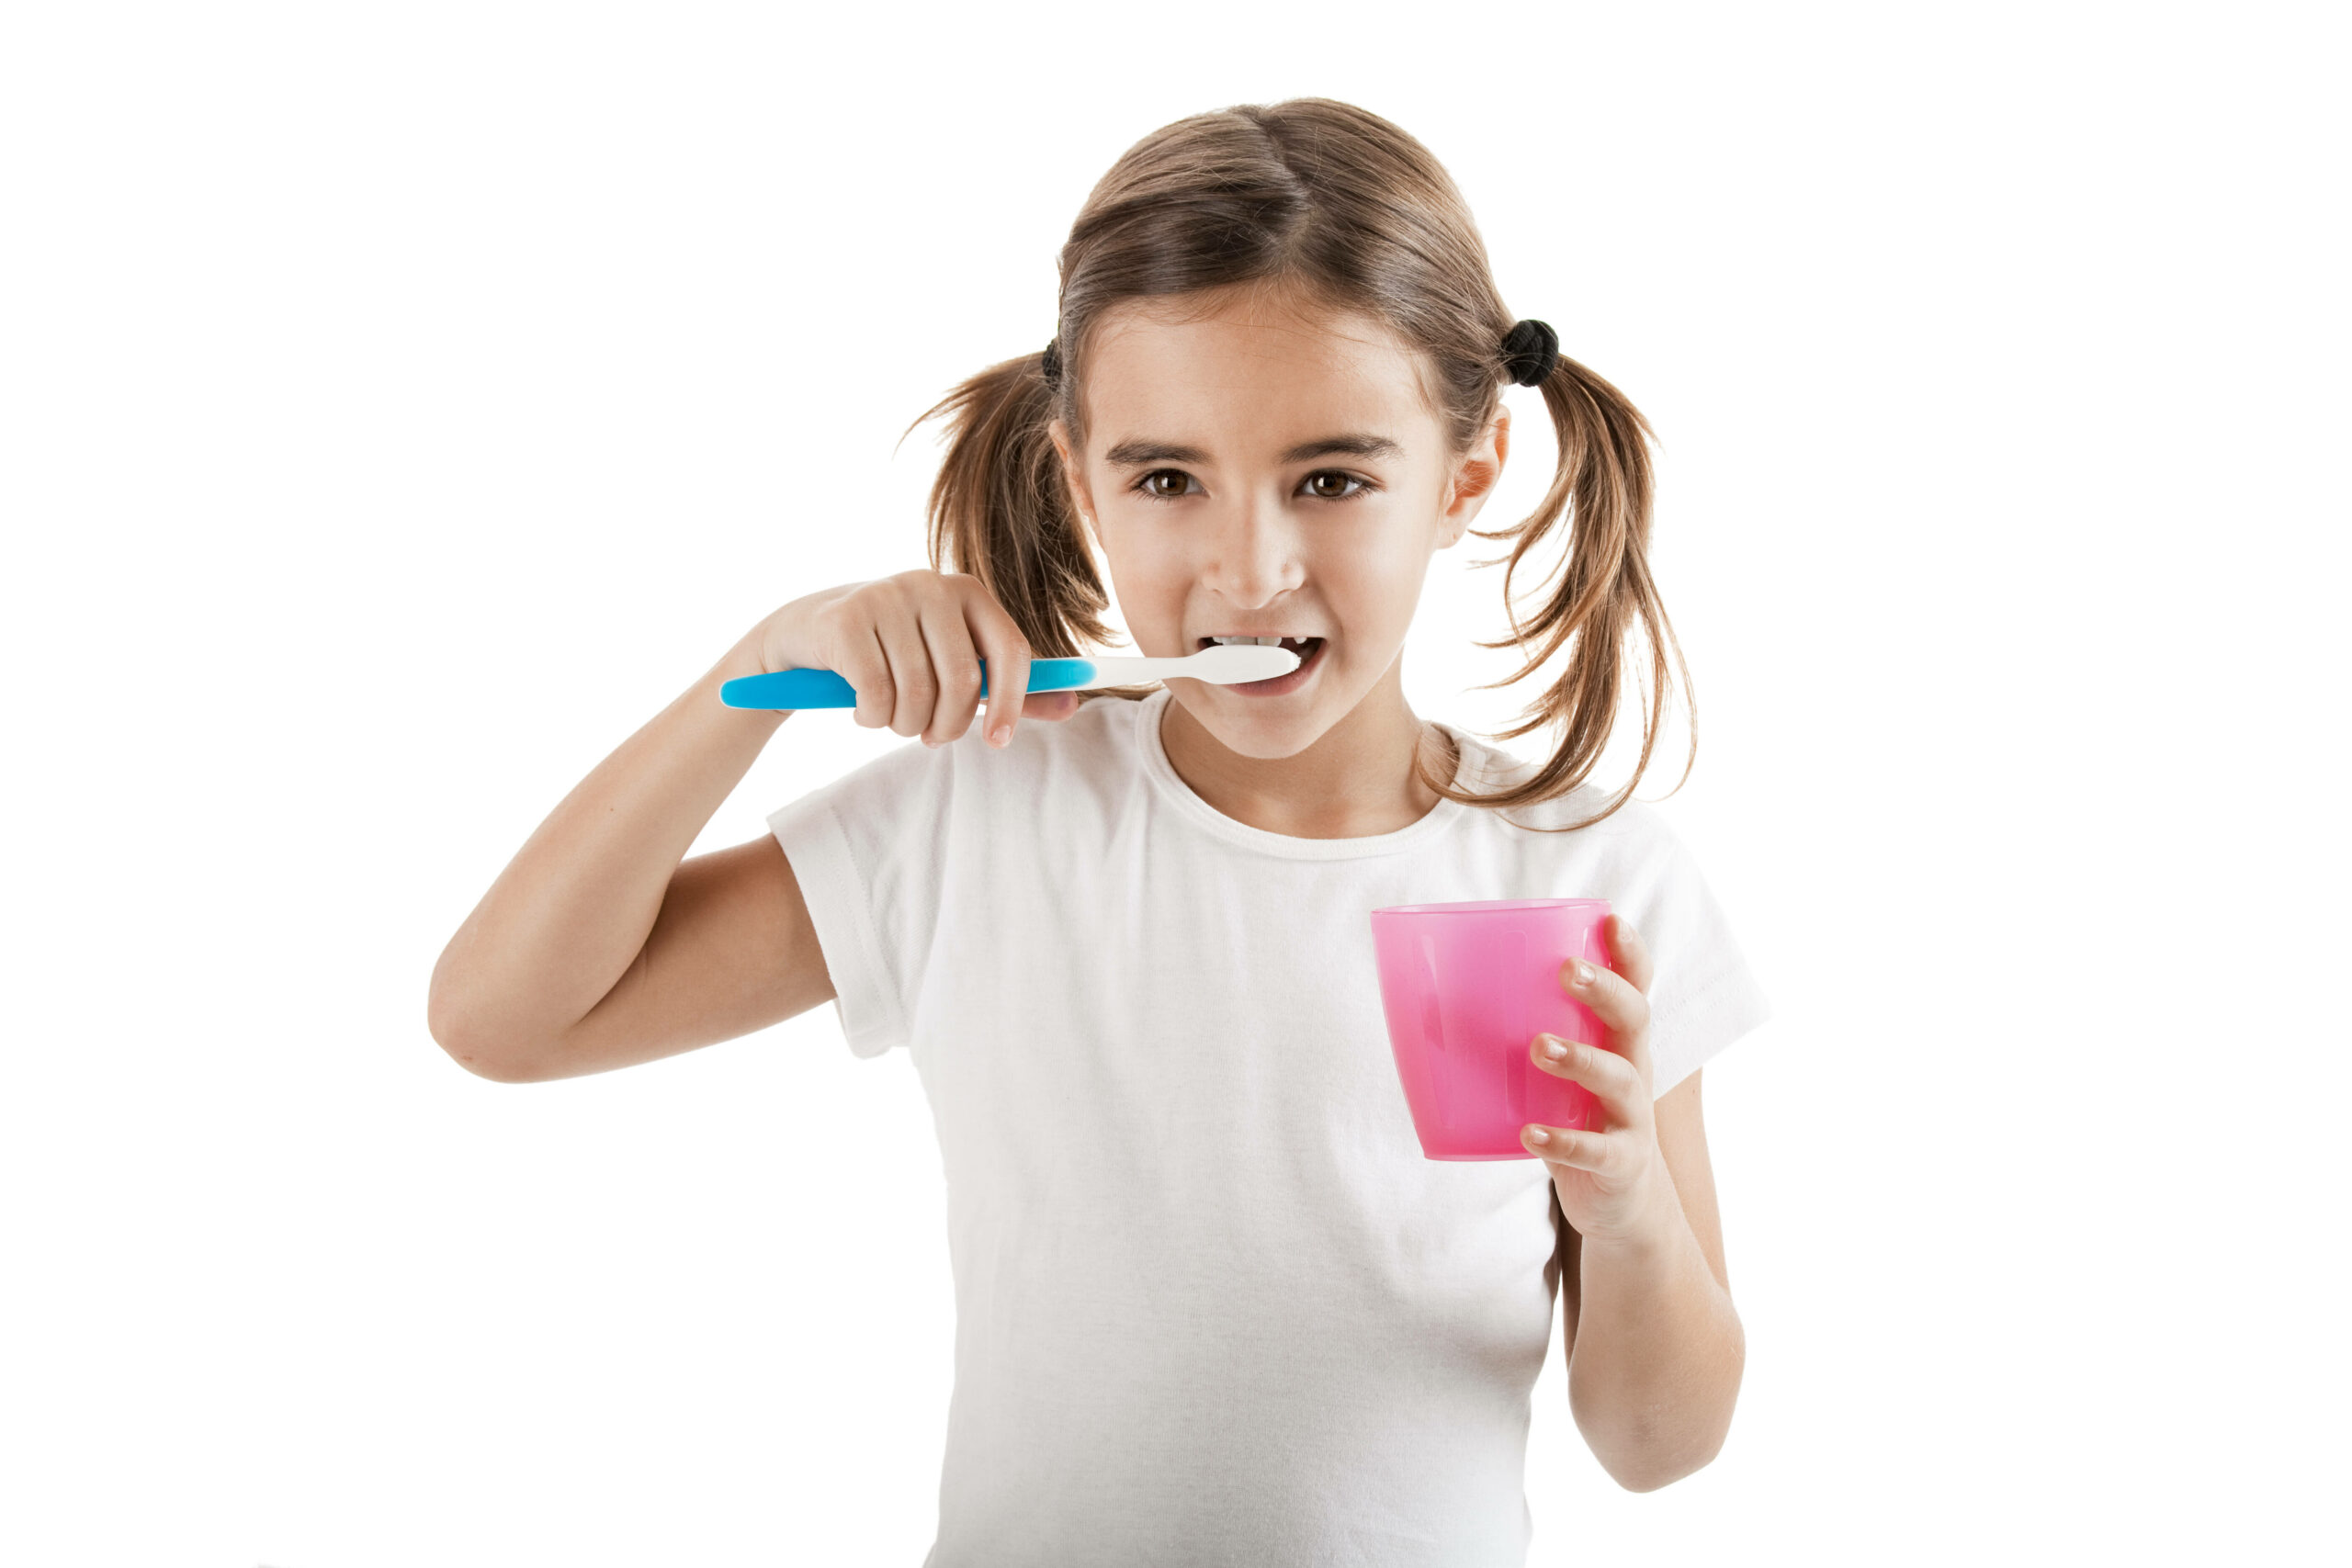 Mädchen putzt sich die Zähne